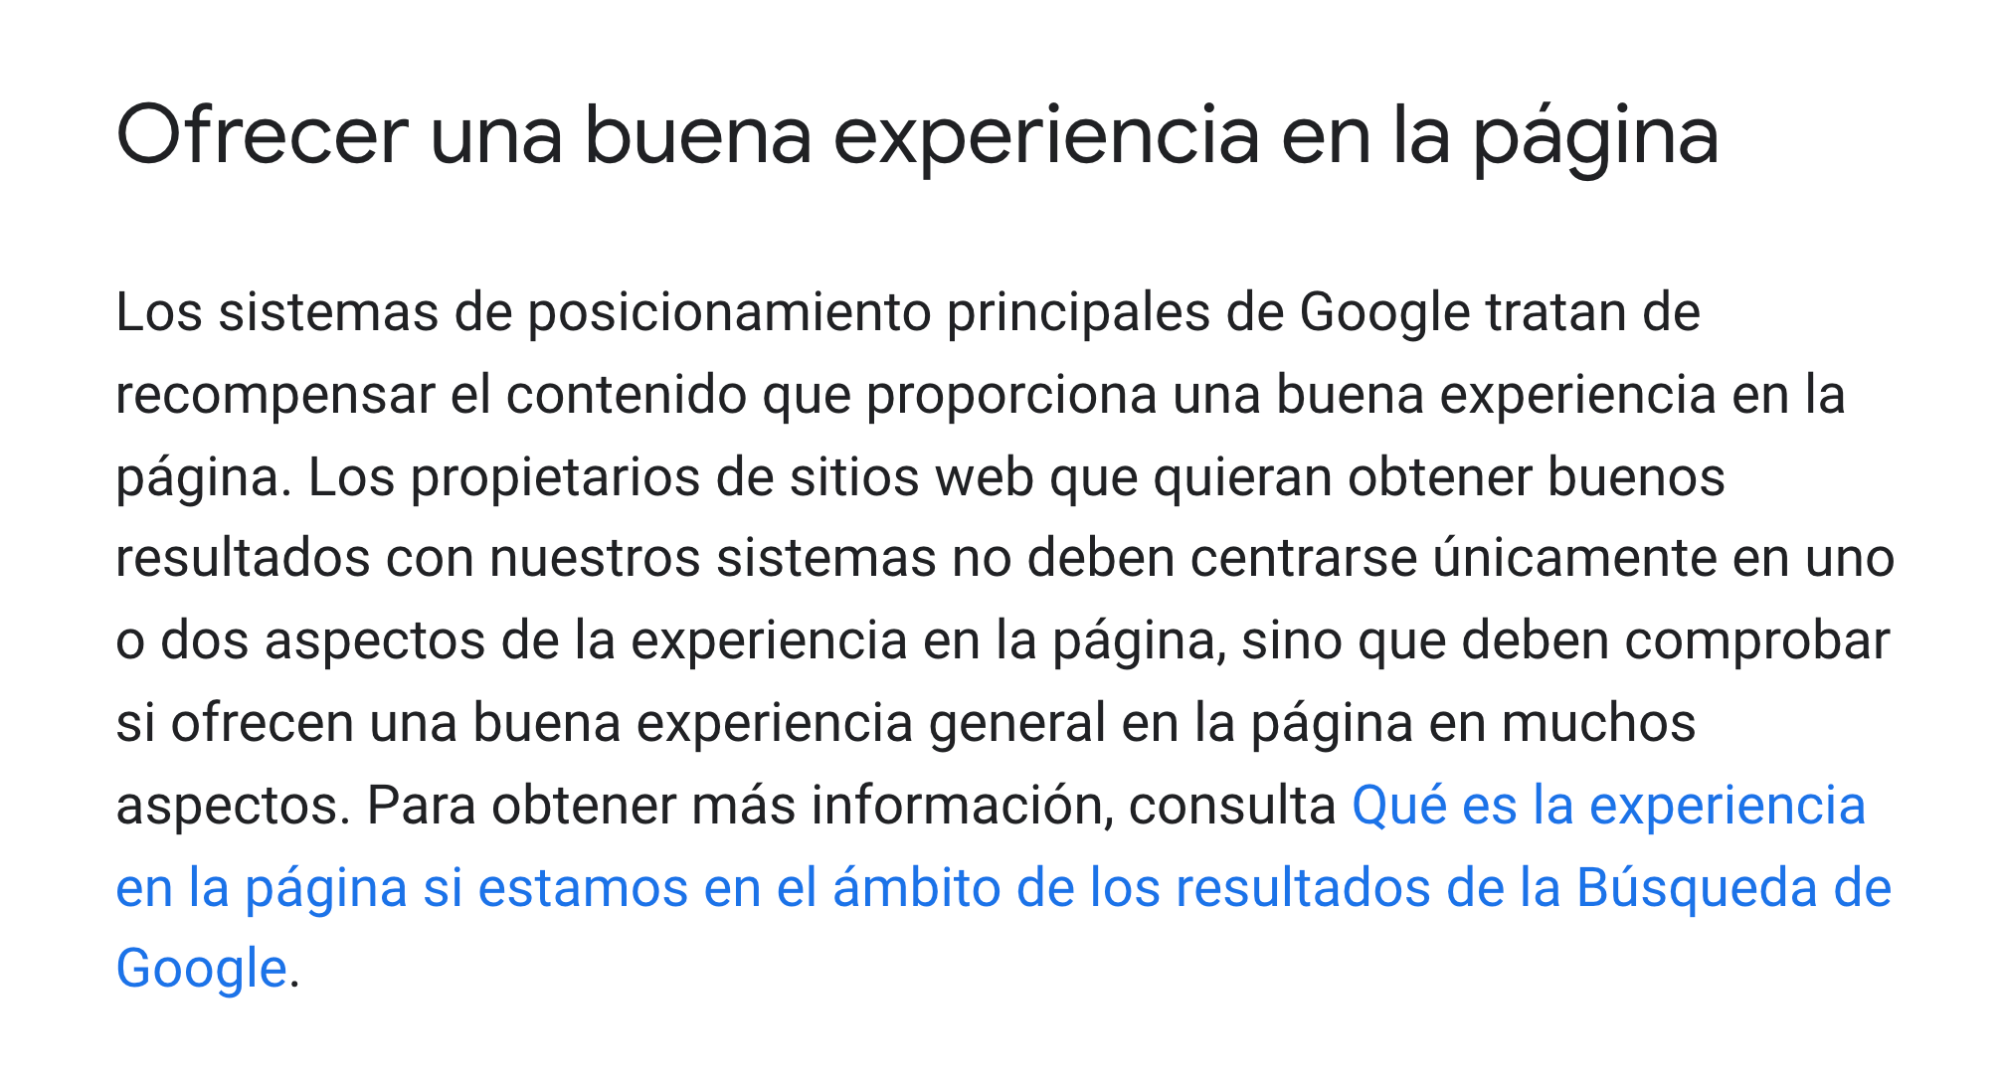 Google dice que hay que ofrecer una buena experiencia de página a los visitantes.